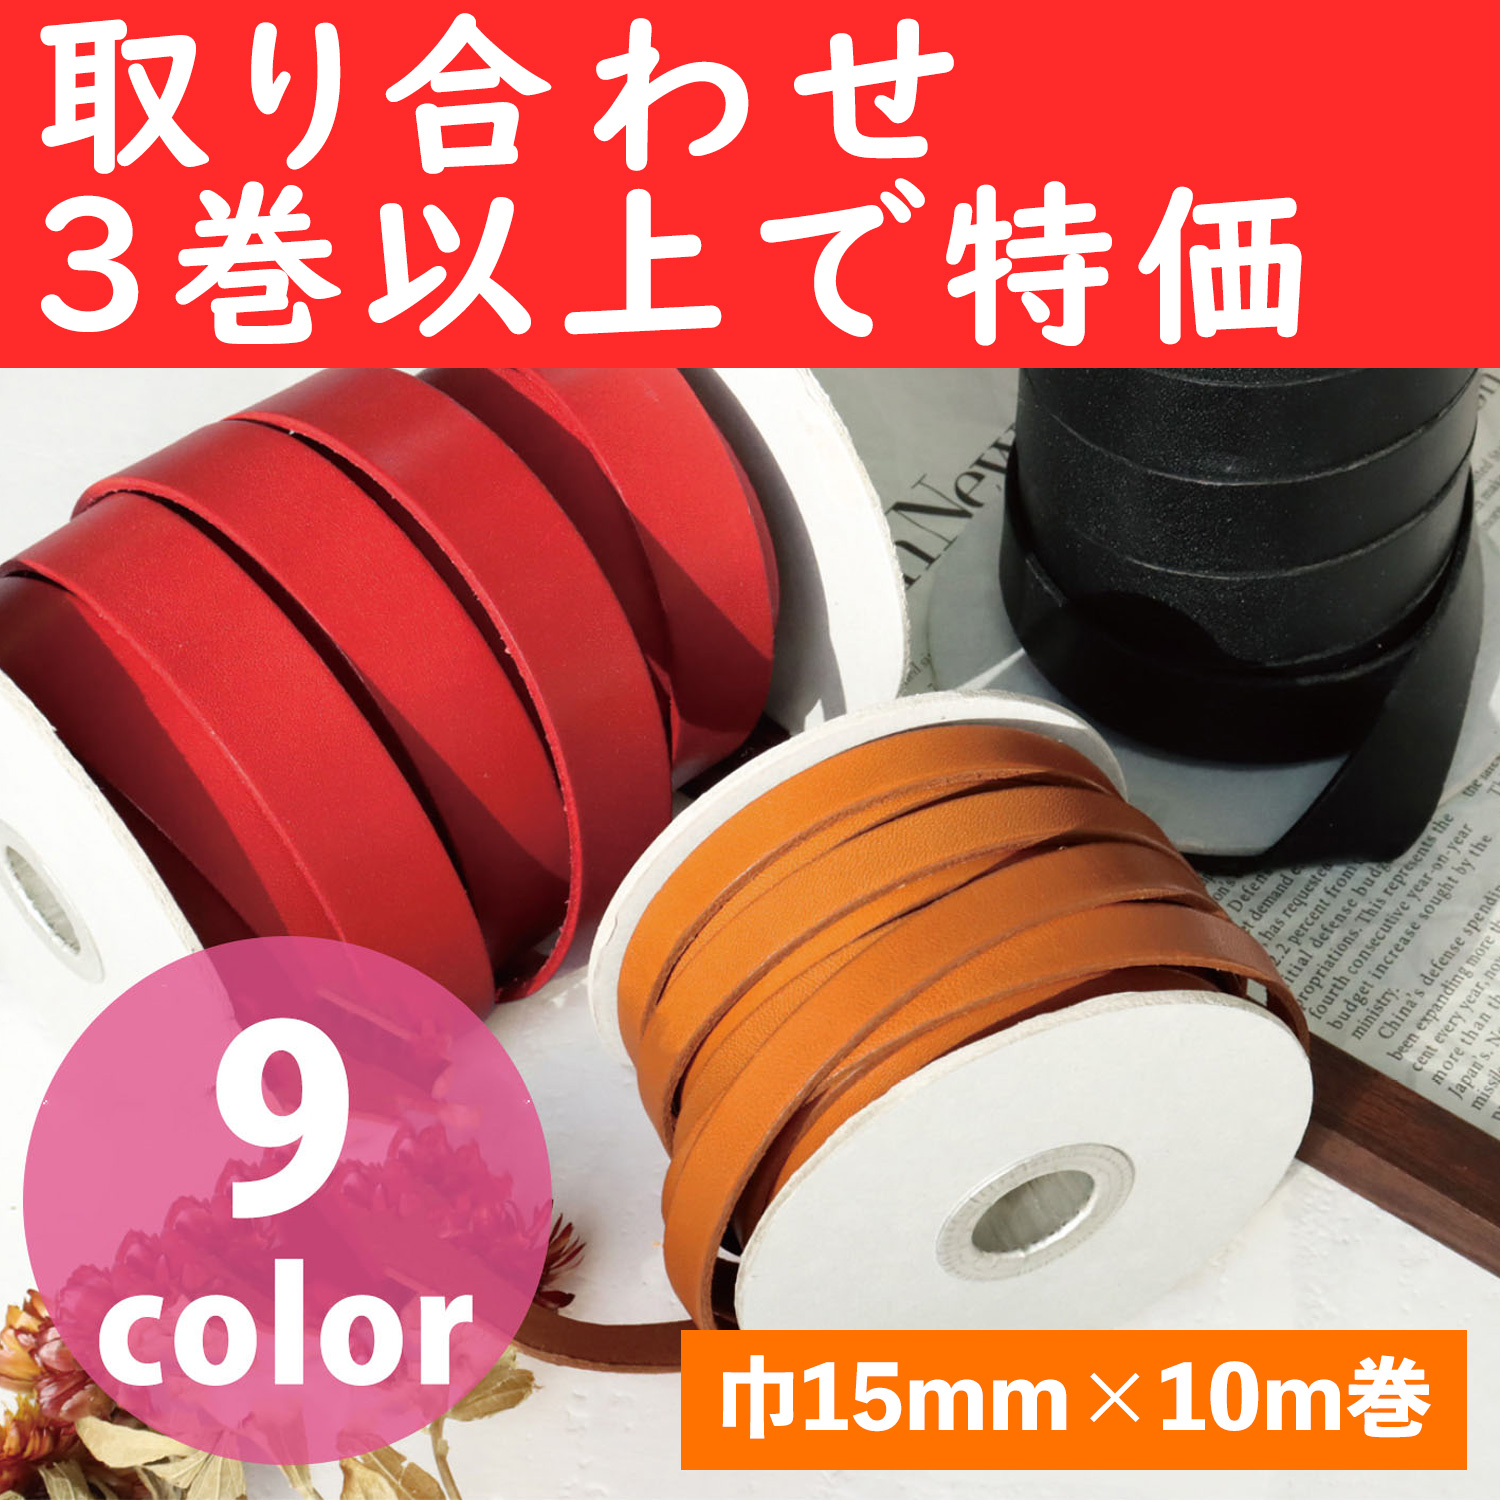 MTLS1015-OVER3 革テープ 巾約15mm×10m巻 色取り合わせ3巻以上 (巻)